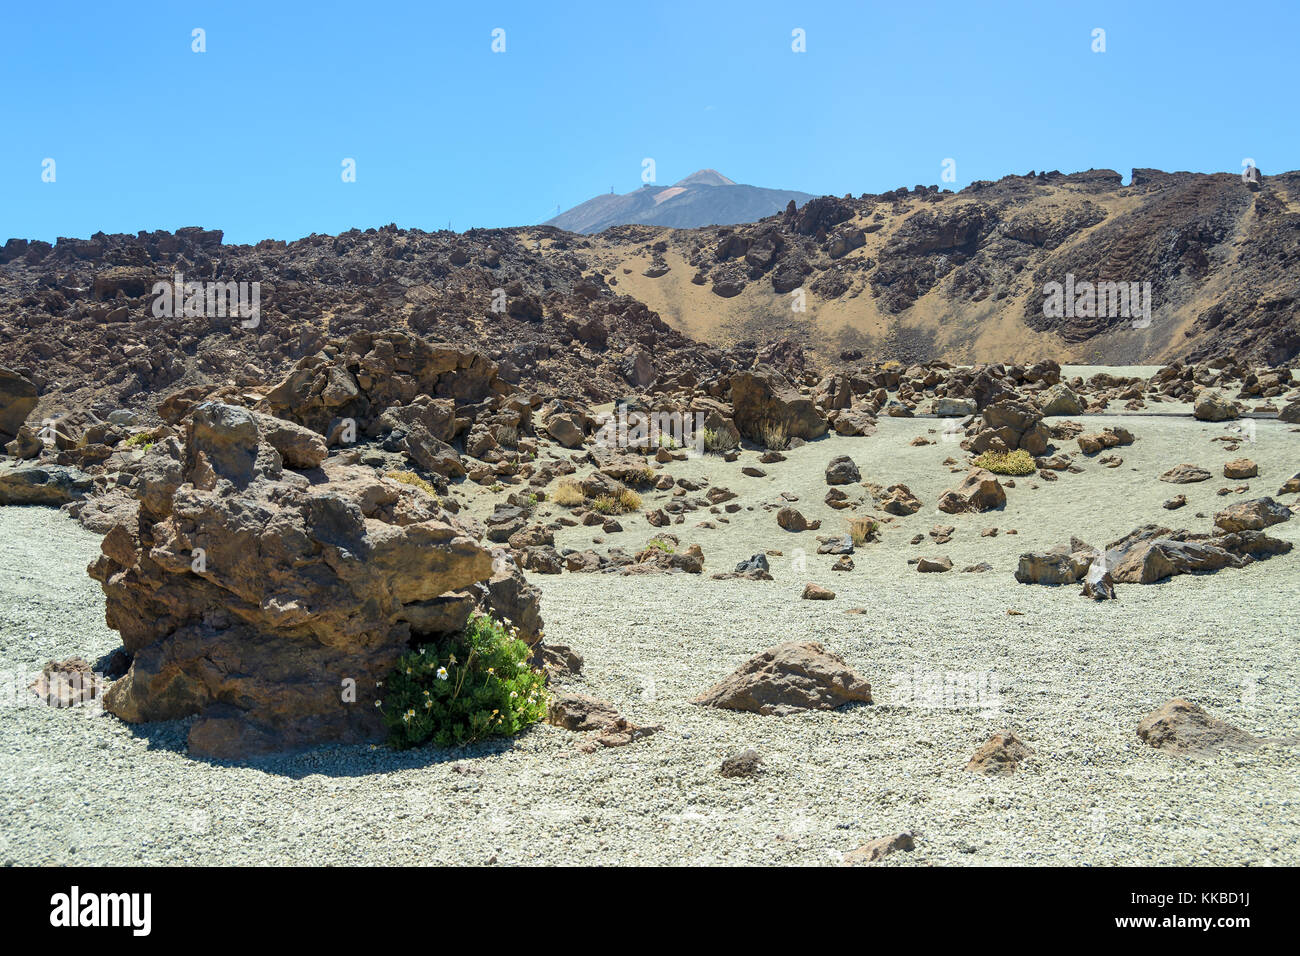 Vulkanische Gesteine mit Sand gemischt, im Hintergrund Mount Teide, Teneriffa, Kanarische Inseln, Spanien Stockfoto